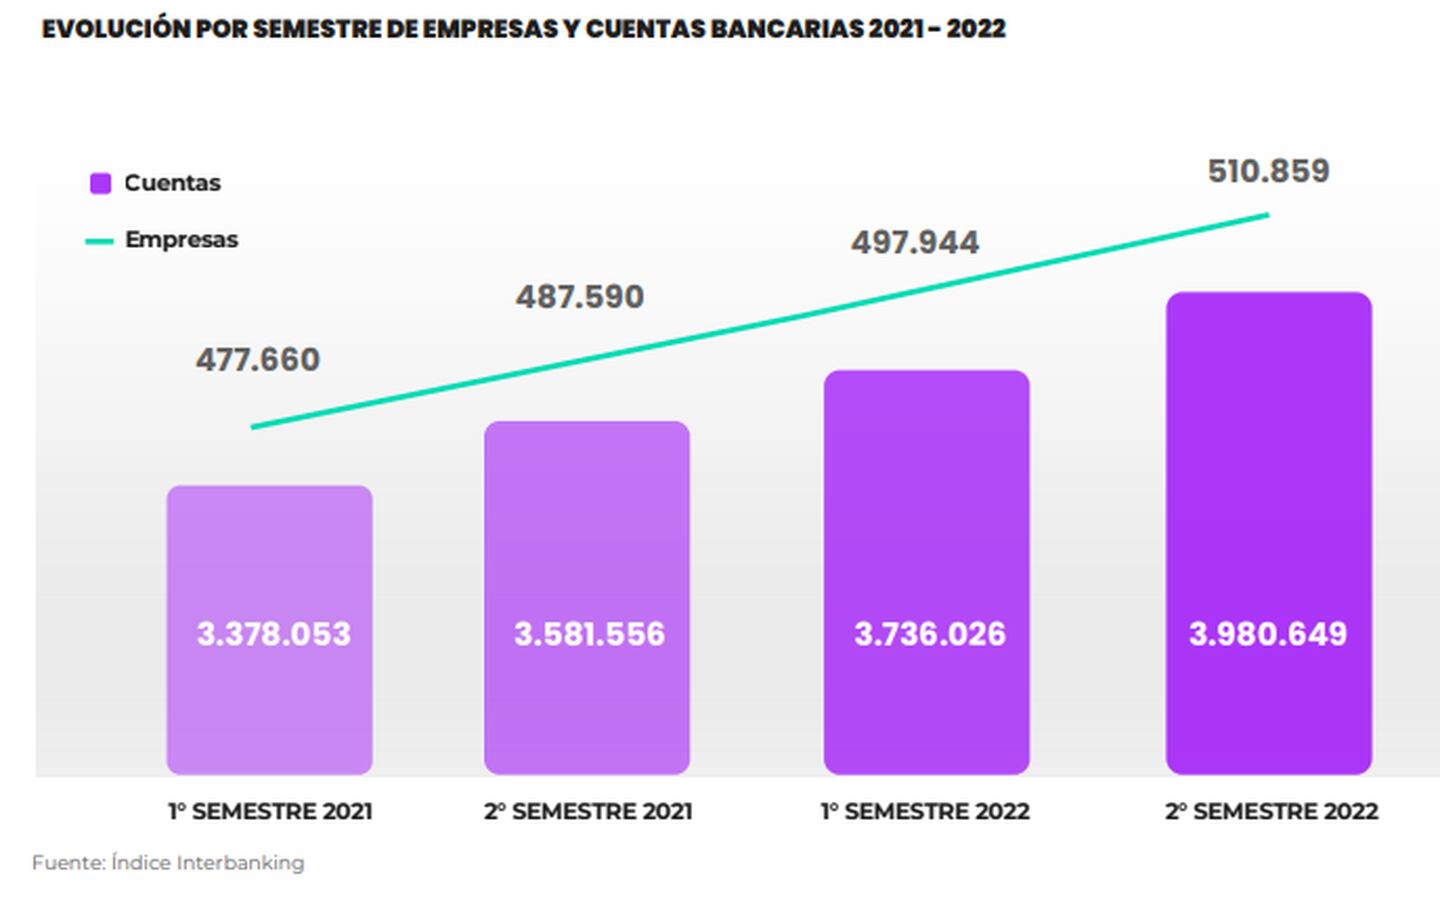 Crecimiento de empresas bancarizadas en Argentinadfd